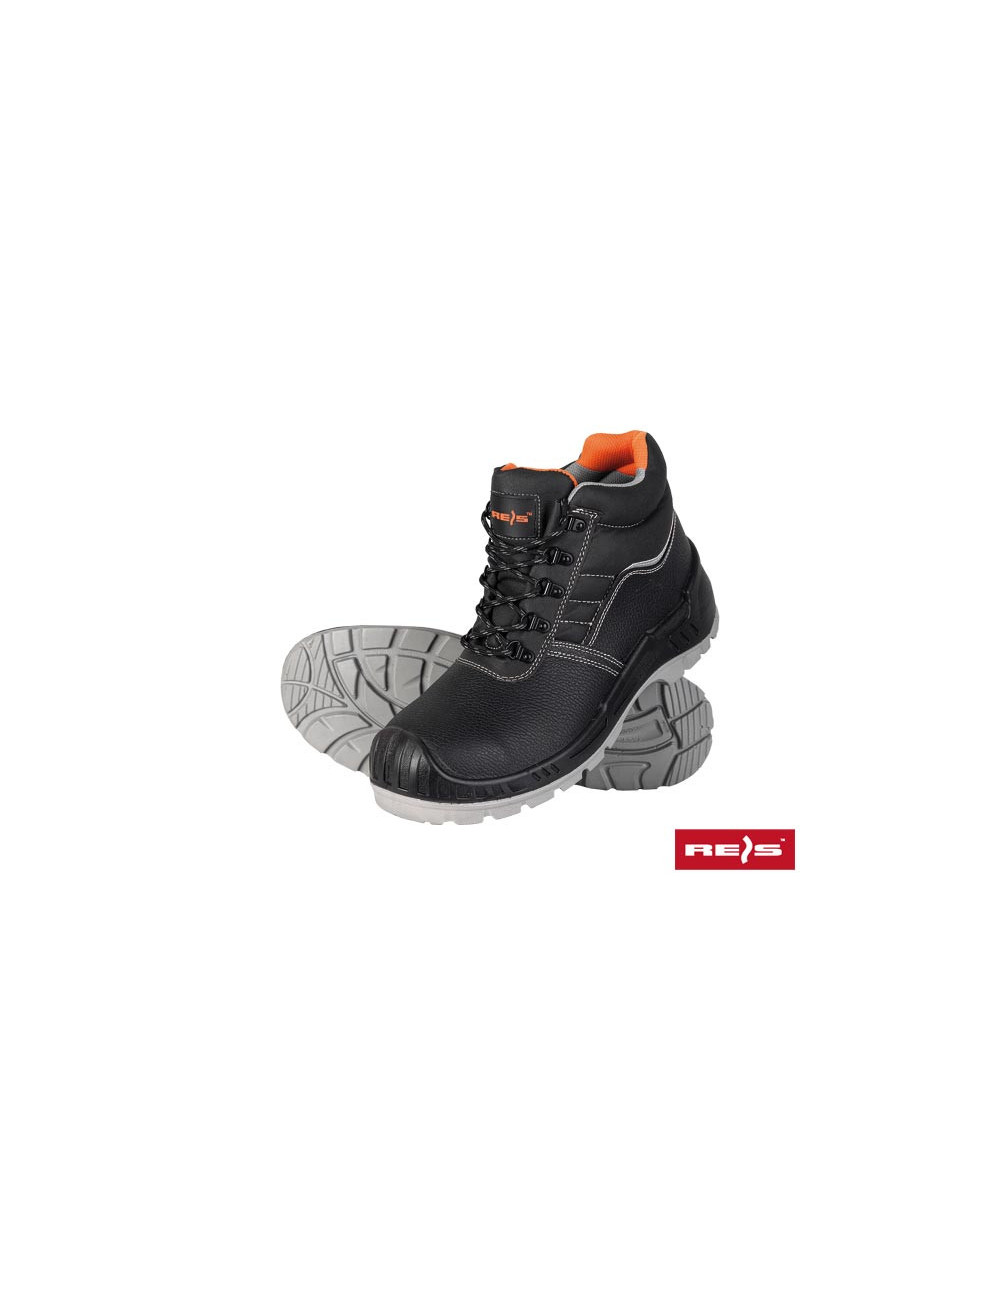 Safety shoes bctitan_t bp black-orange Reis